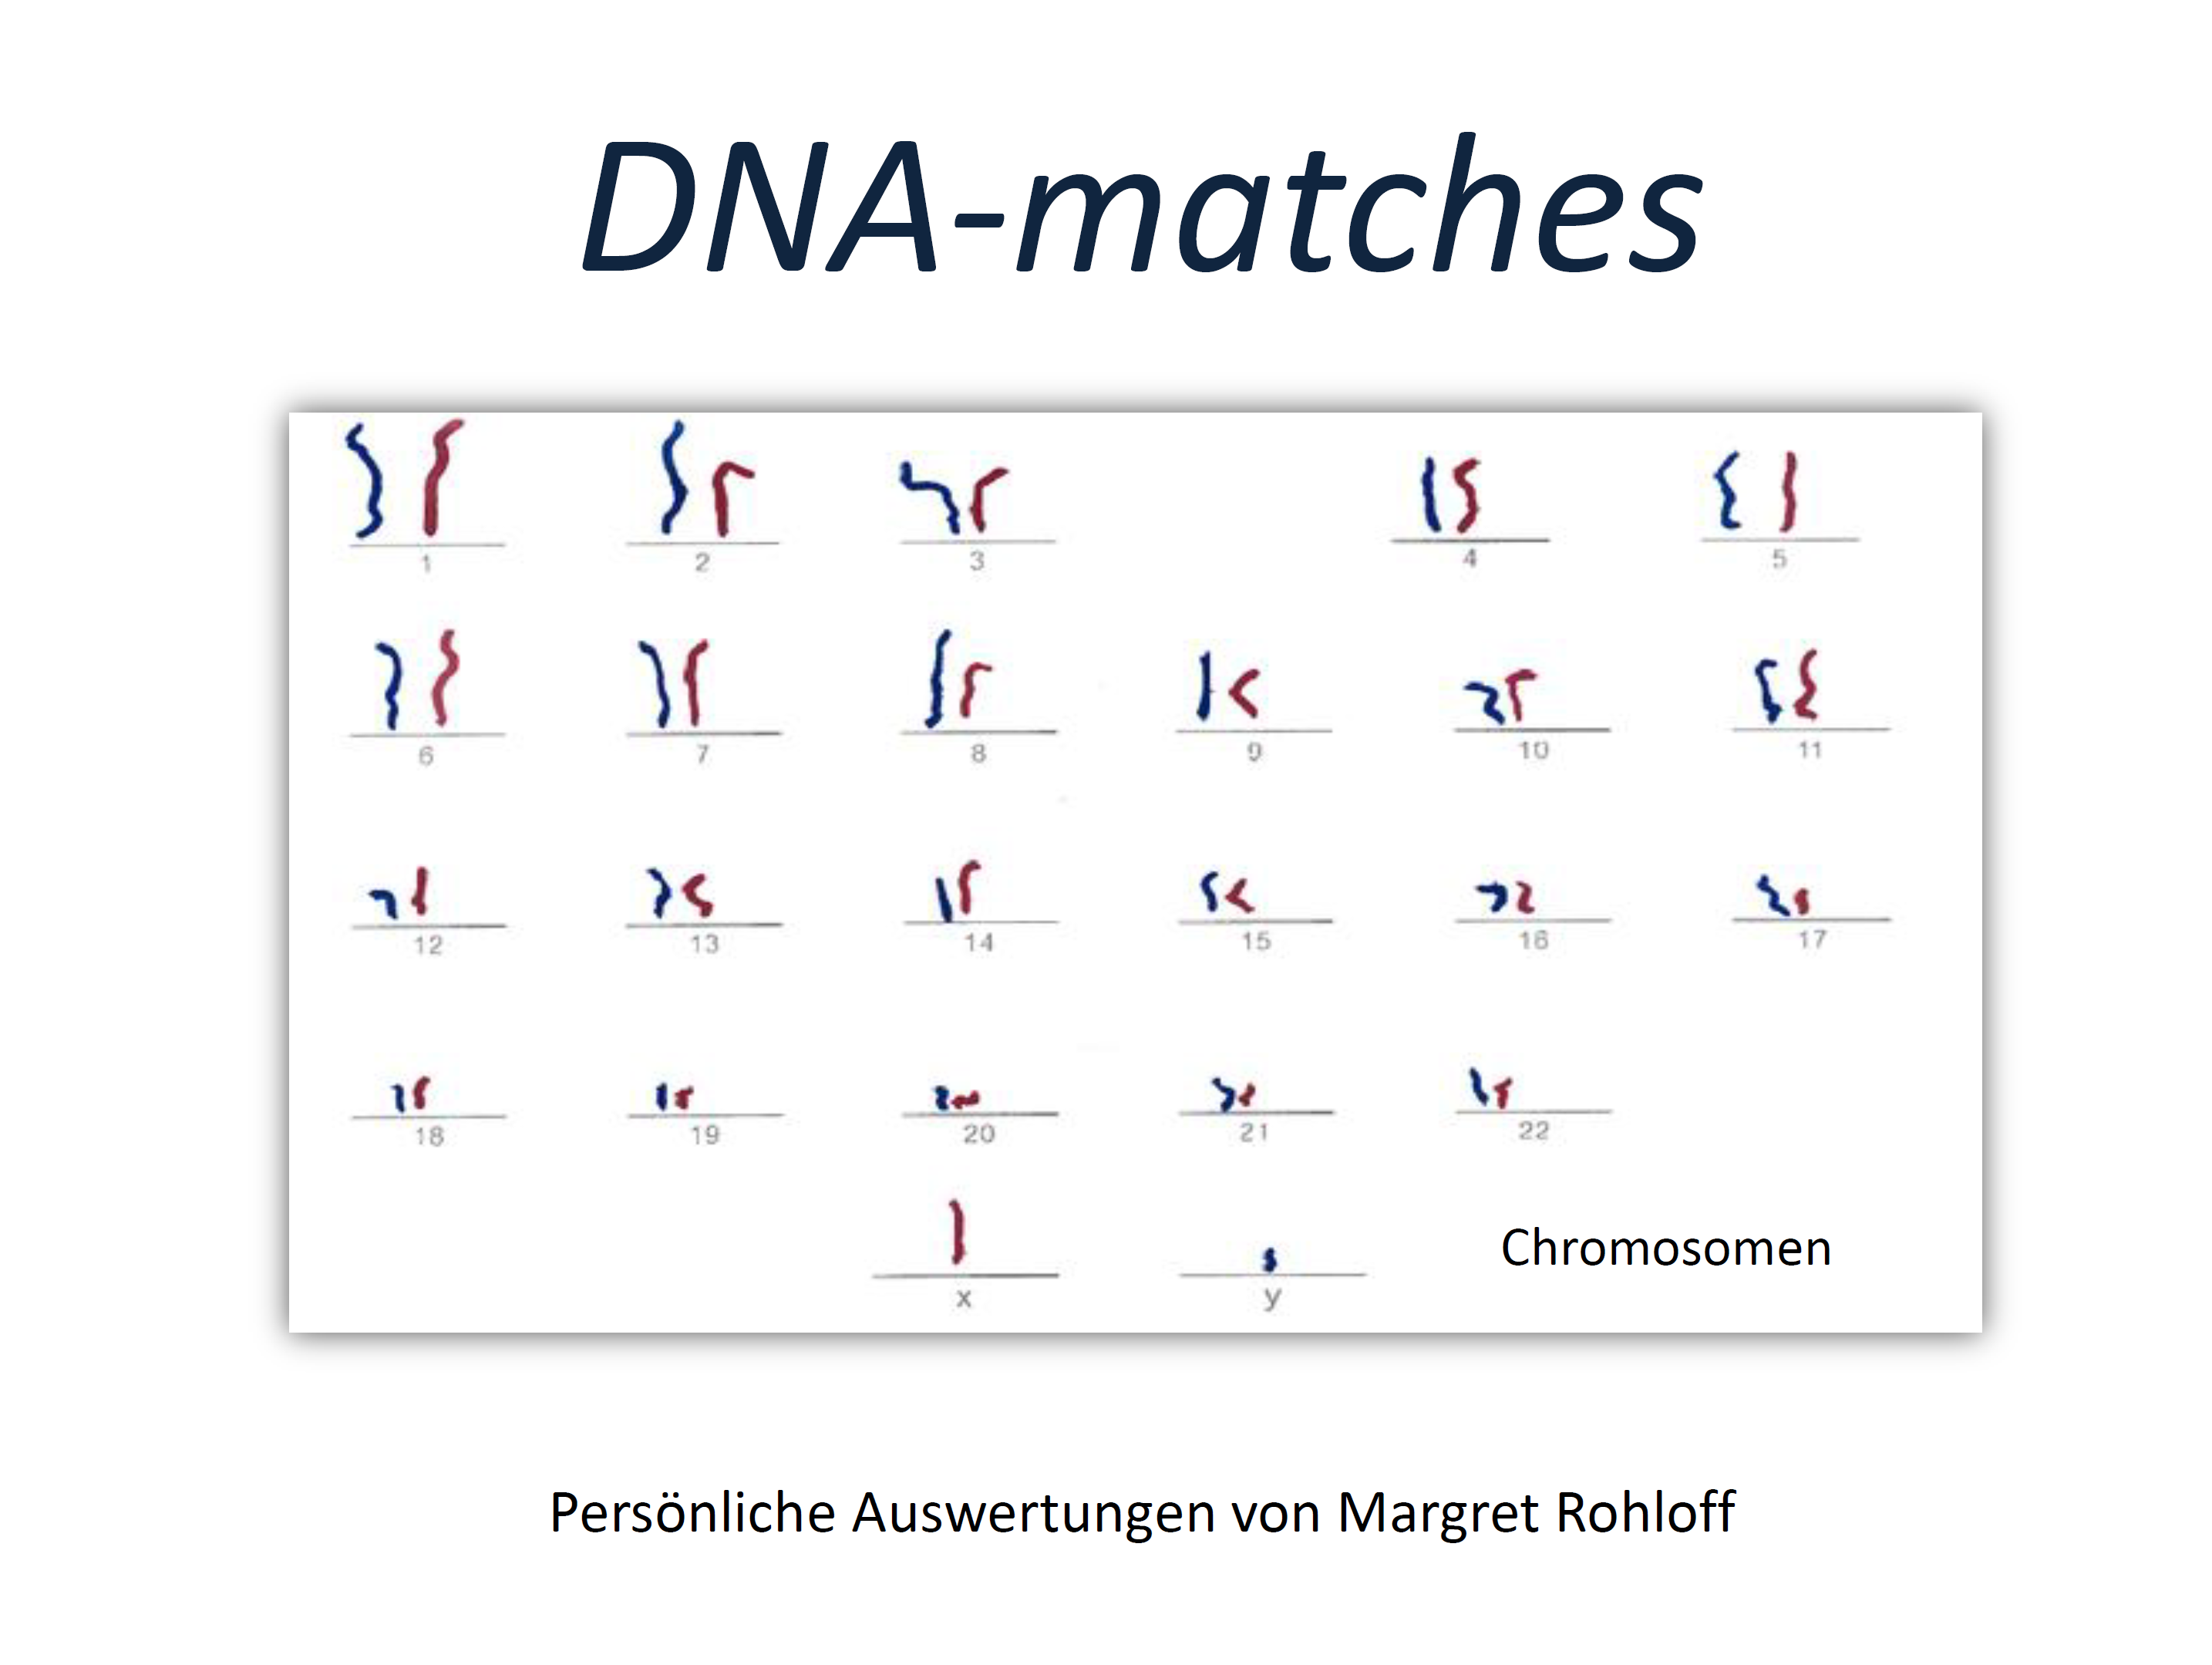 Rohloff (2020), DNA-matches - Beispiele und Leerformulare